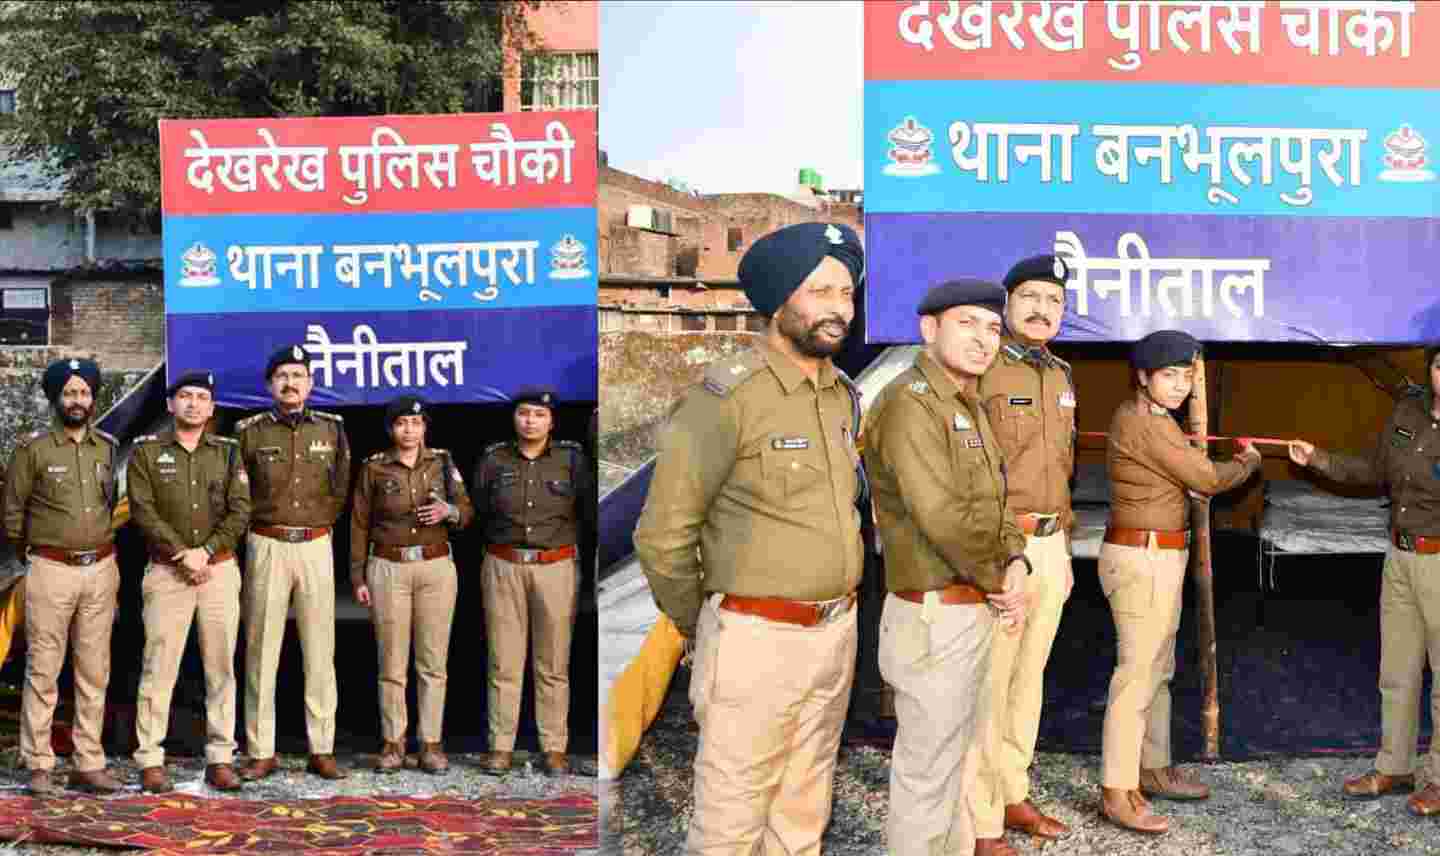 Uttarakhand news: Police Station established at Banbhulpura haldwani paramilitary security forces also deployed